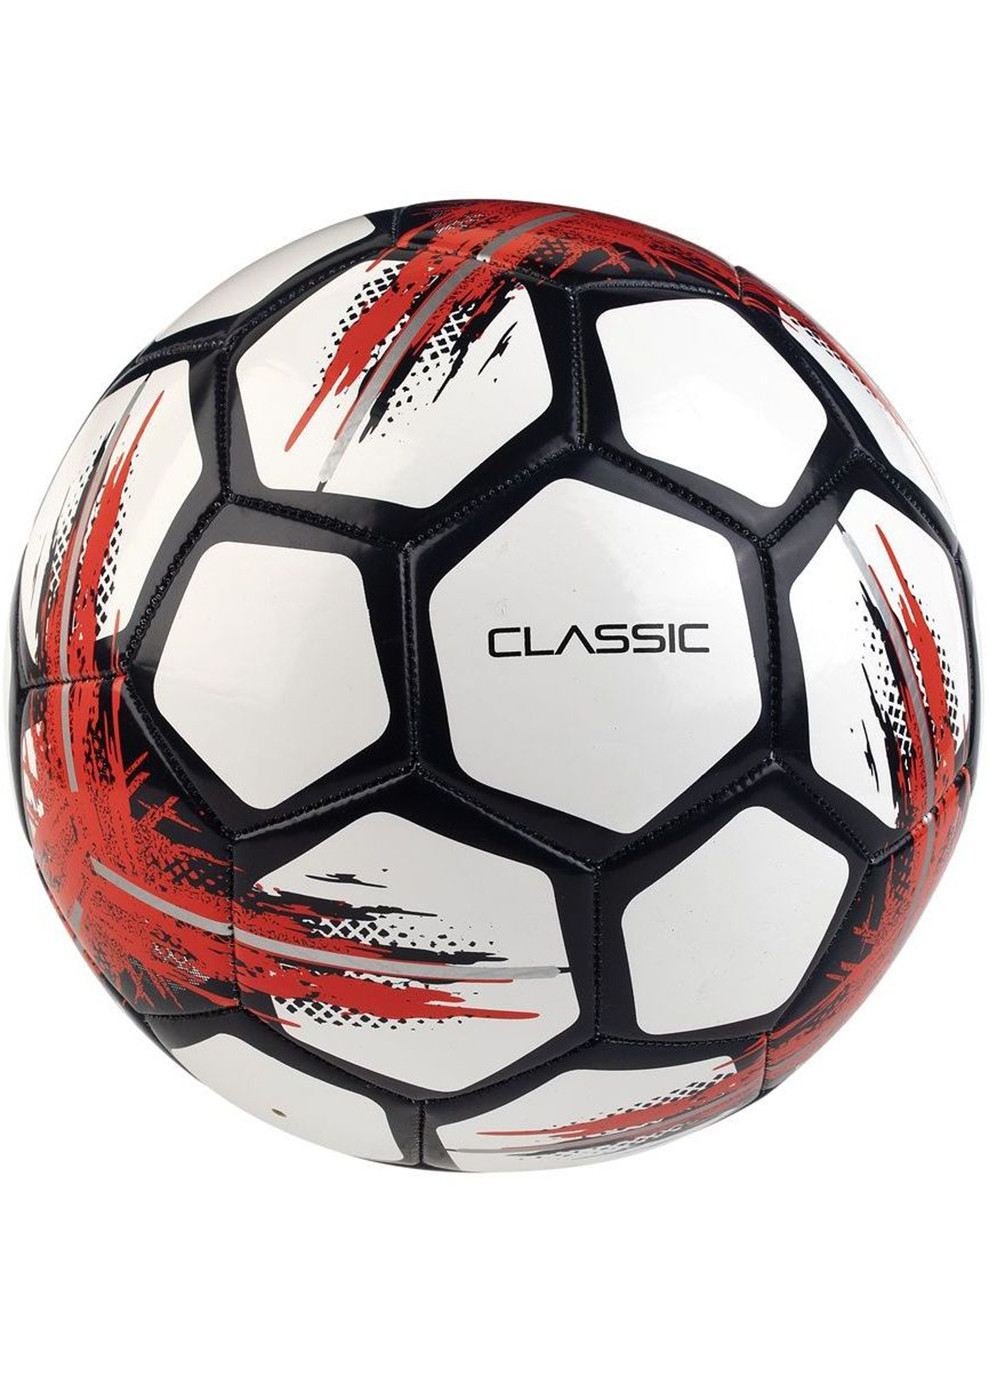 М'яч футбольний Classic New білий/чорний Уни 5 (099581-010-5) Select (254315199)